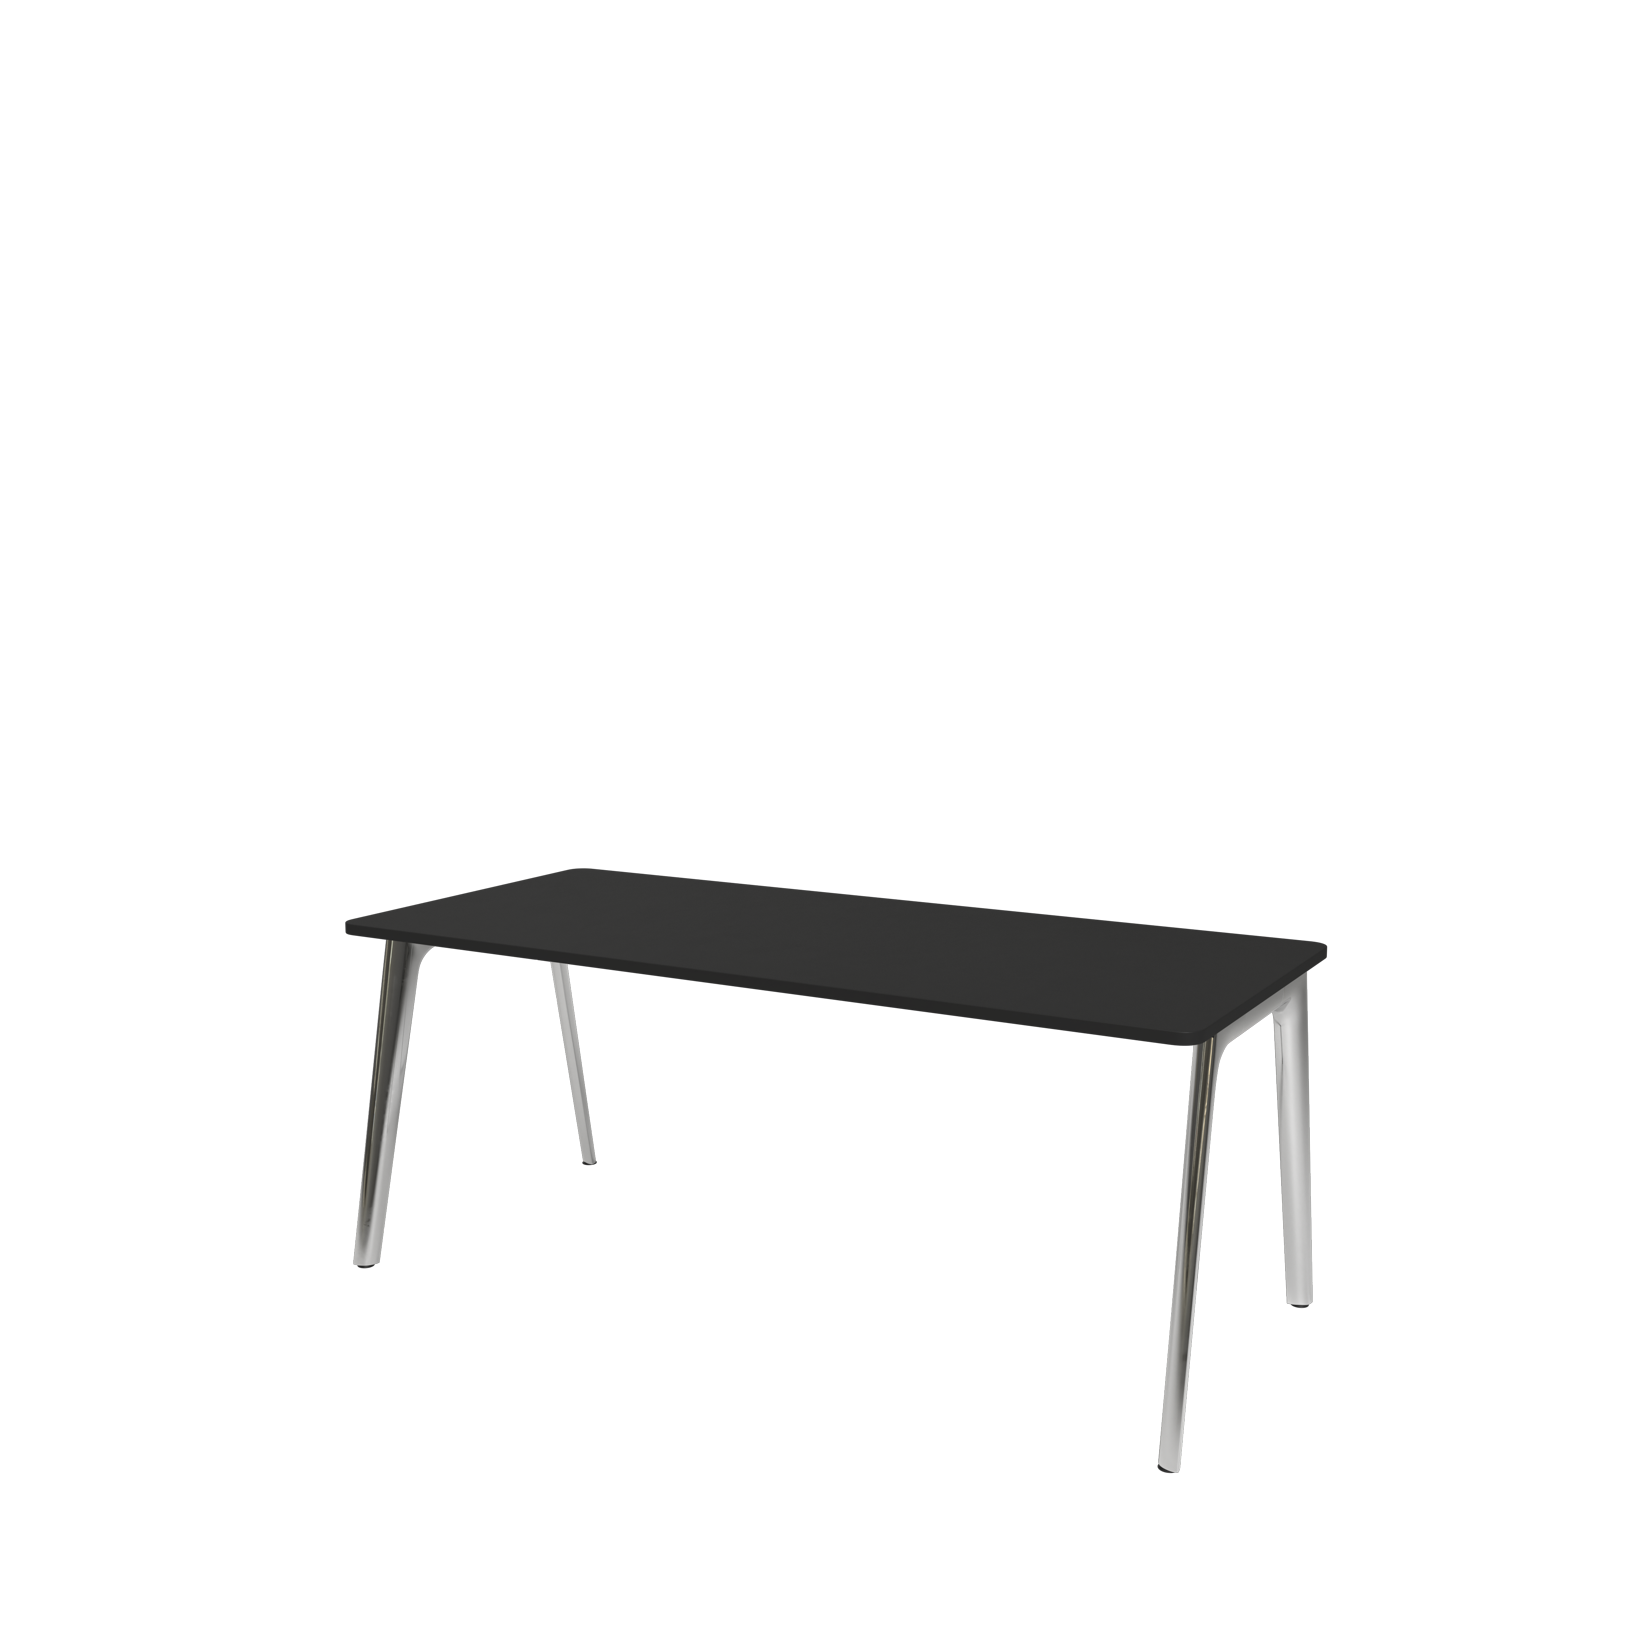 Pluralis Rectangular Table - 80 x 180cm